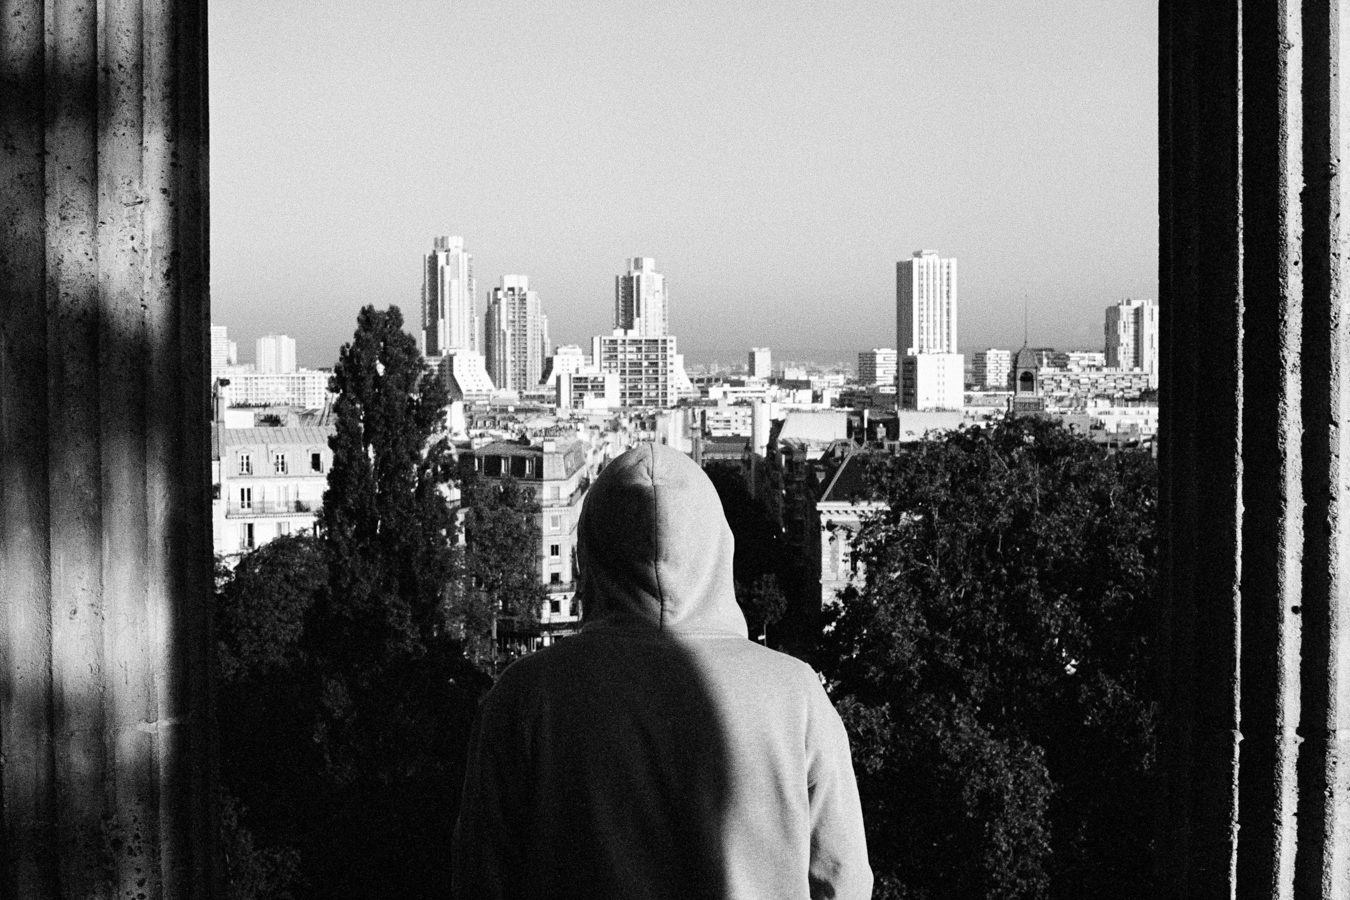 Photographie argentique noir et blanc avec une personne portant une capuche vue de dos regardant le paysage parisien depuis le point culminant du parc des Buttes Chaumonds à Paris. Les bords verticaux de l'image sont délimités par les pillones du kiosque. Une ombre traverse le dos du personnage de manière verticale.